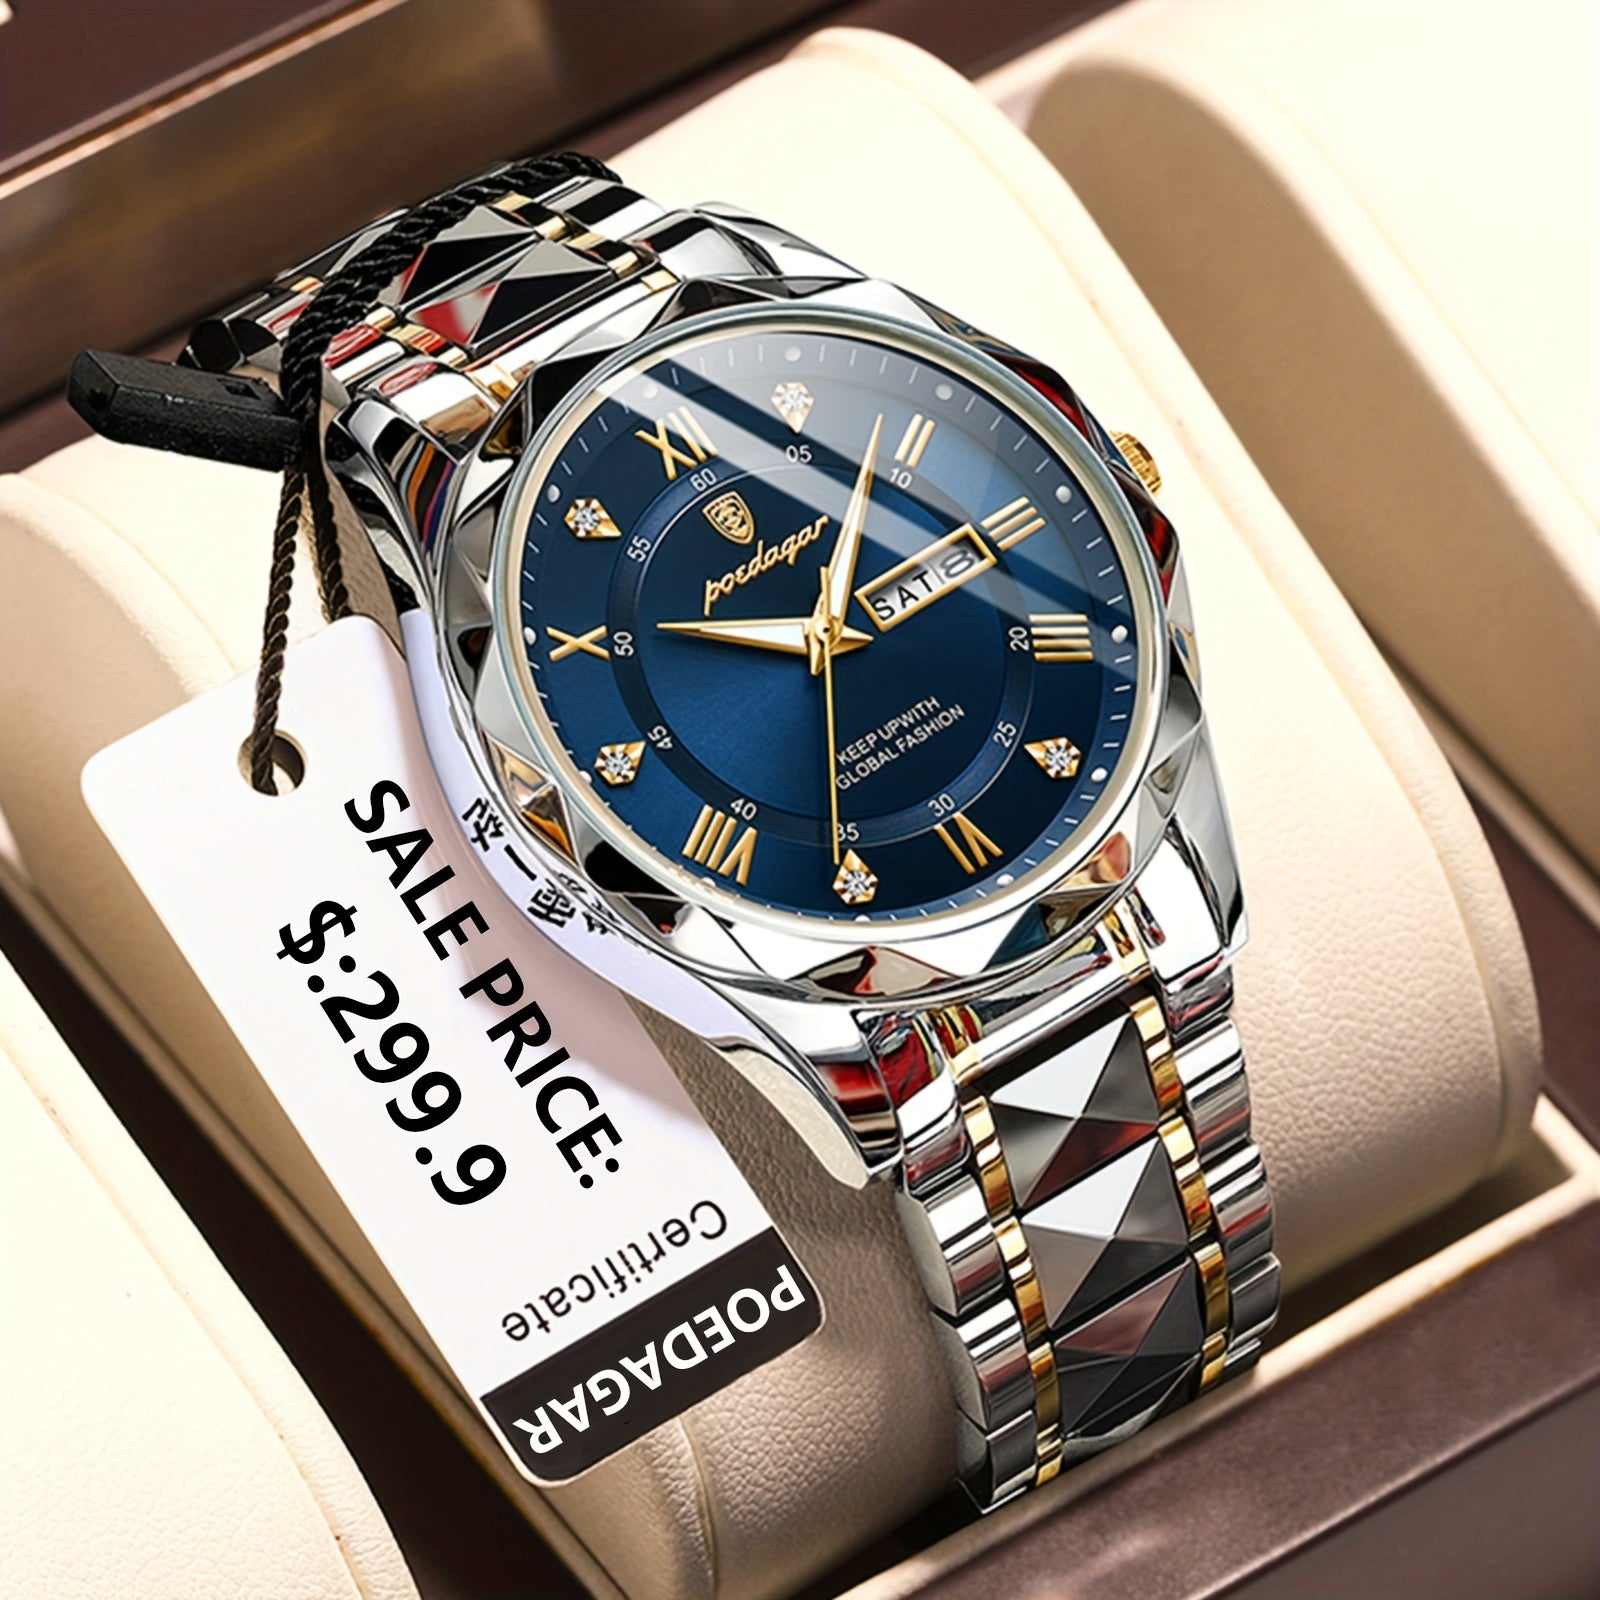 POEDAGAR Waterproof Luminous Calendar Men's Quartz Watch Stainless Steel Wrist Watch, Ideal choice for Gifts